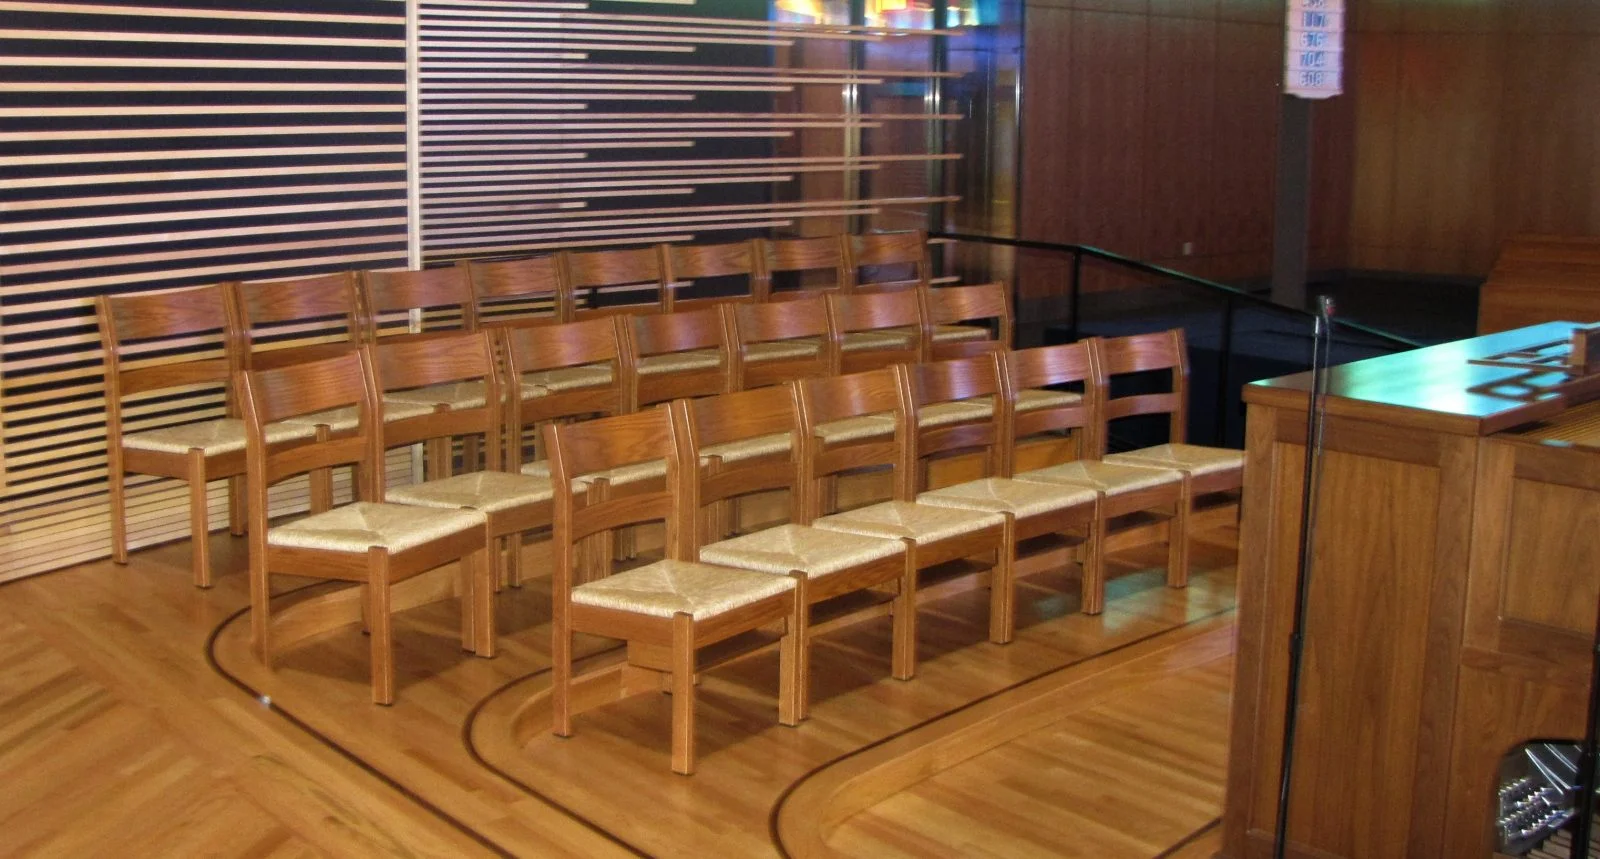 chapel chairs, church chairs, choir seating, church furniture